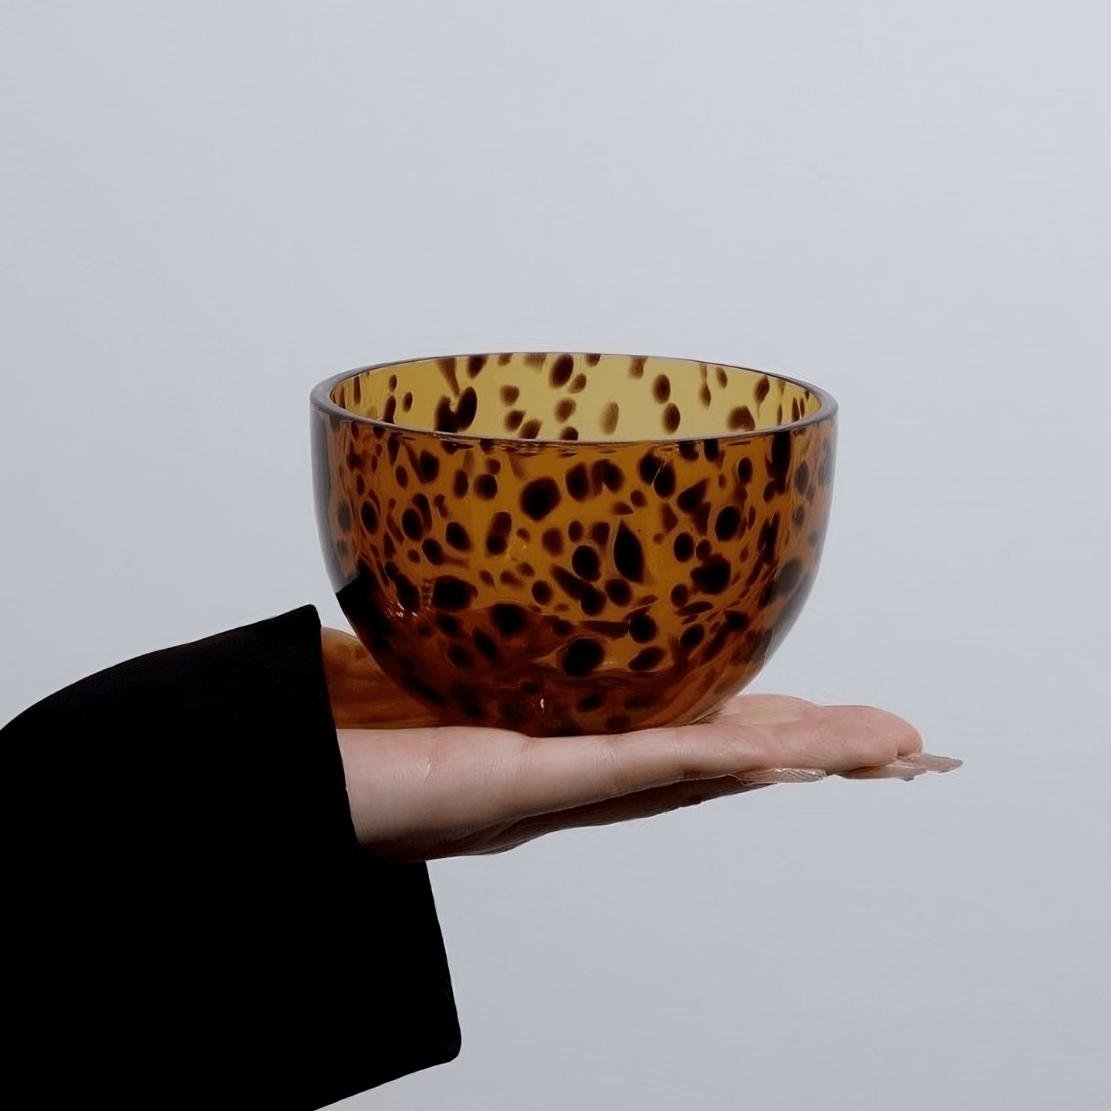 Brown glass tortoiseshell bowl on a hand